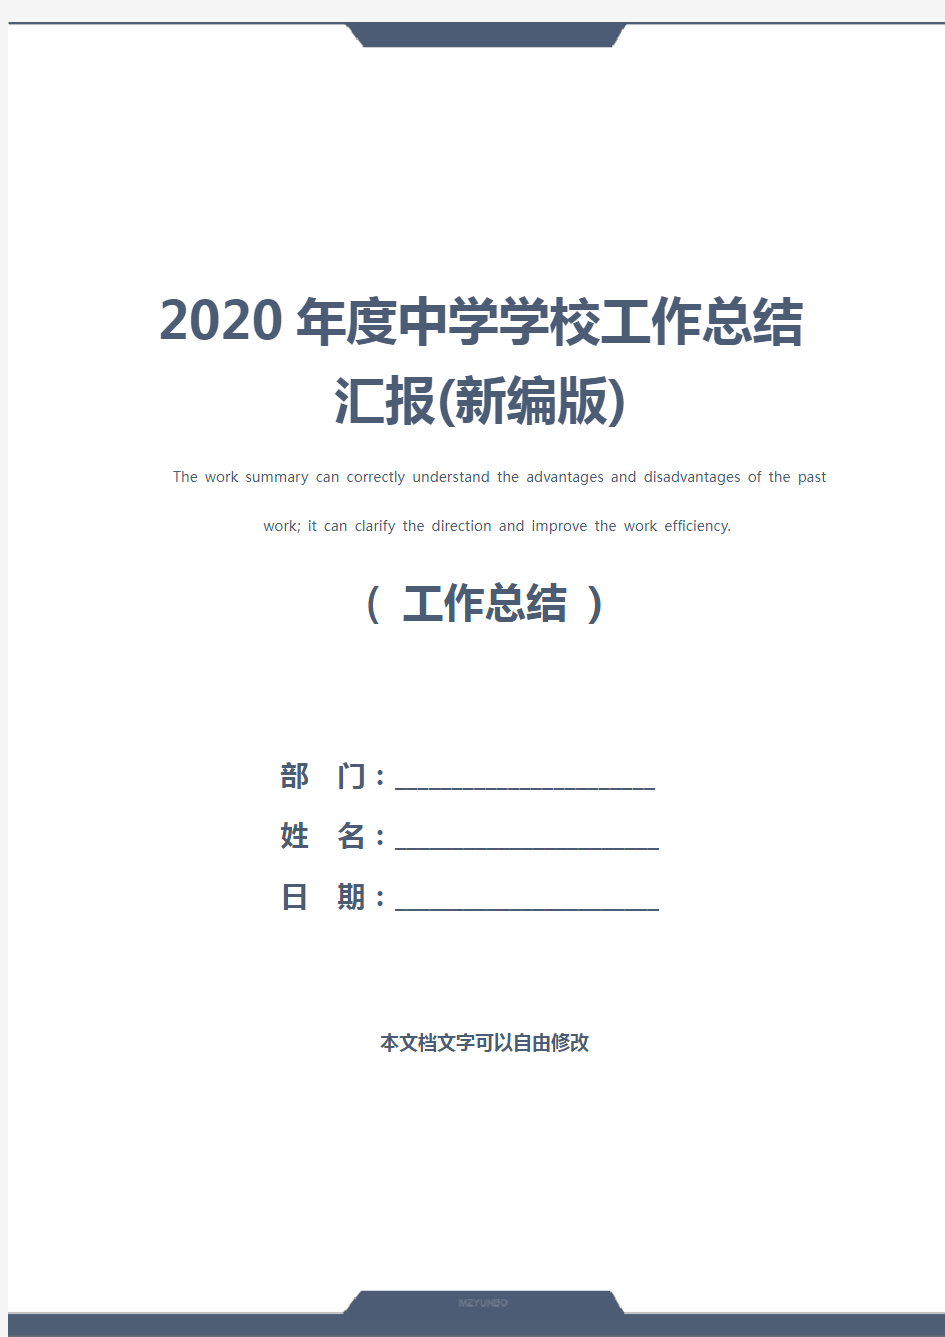 2020年度中学学校工作总结汇报(新编版)